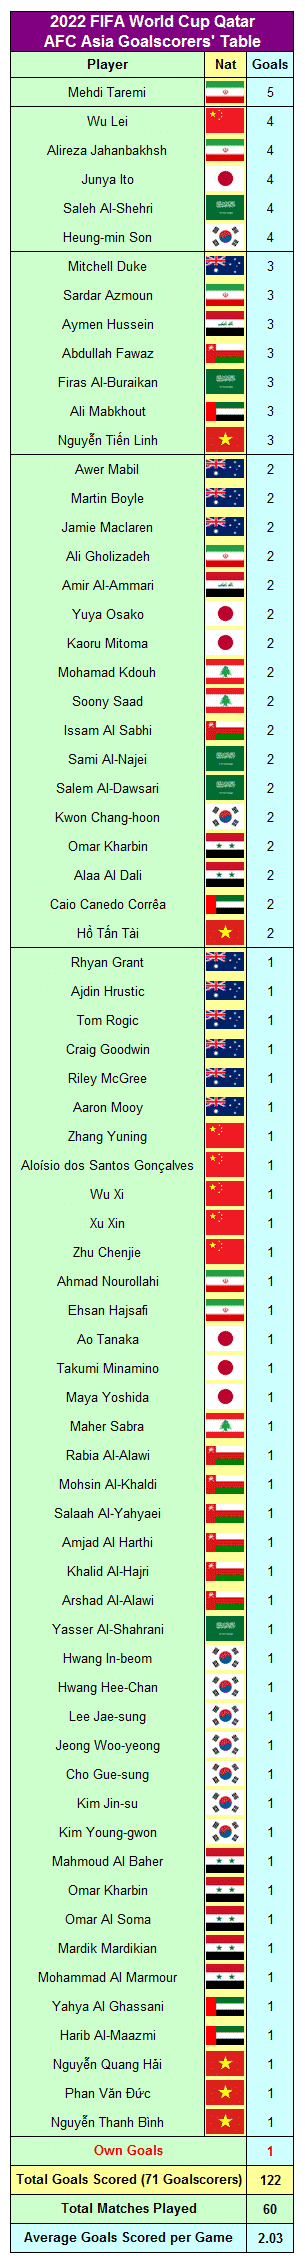 Classifica dei marcatori della Coppa del Mondo FIFA 2022 Qatr AFC Asia